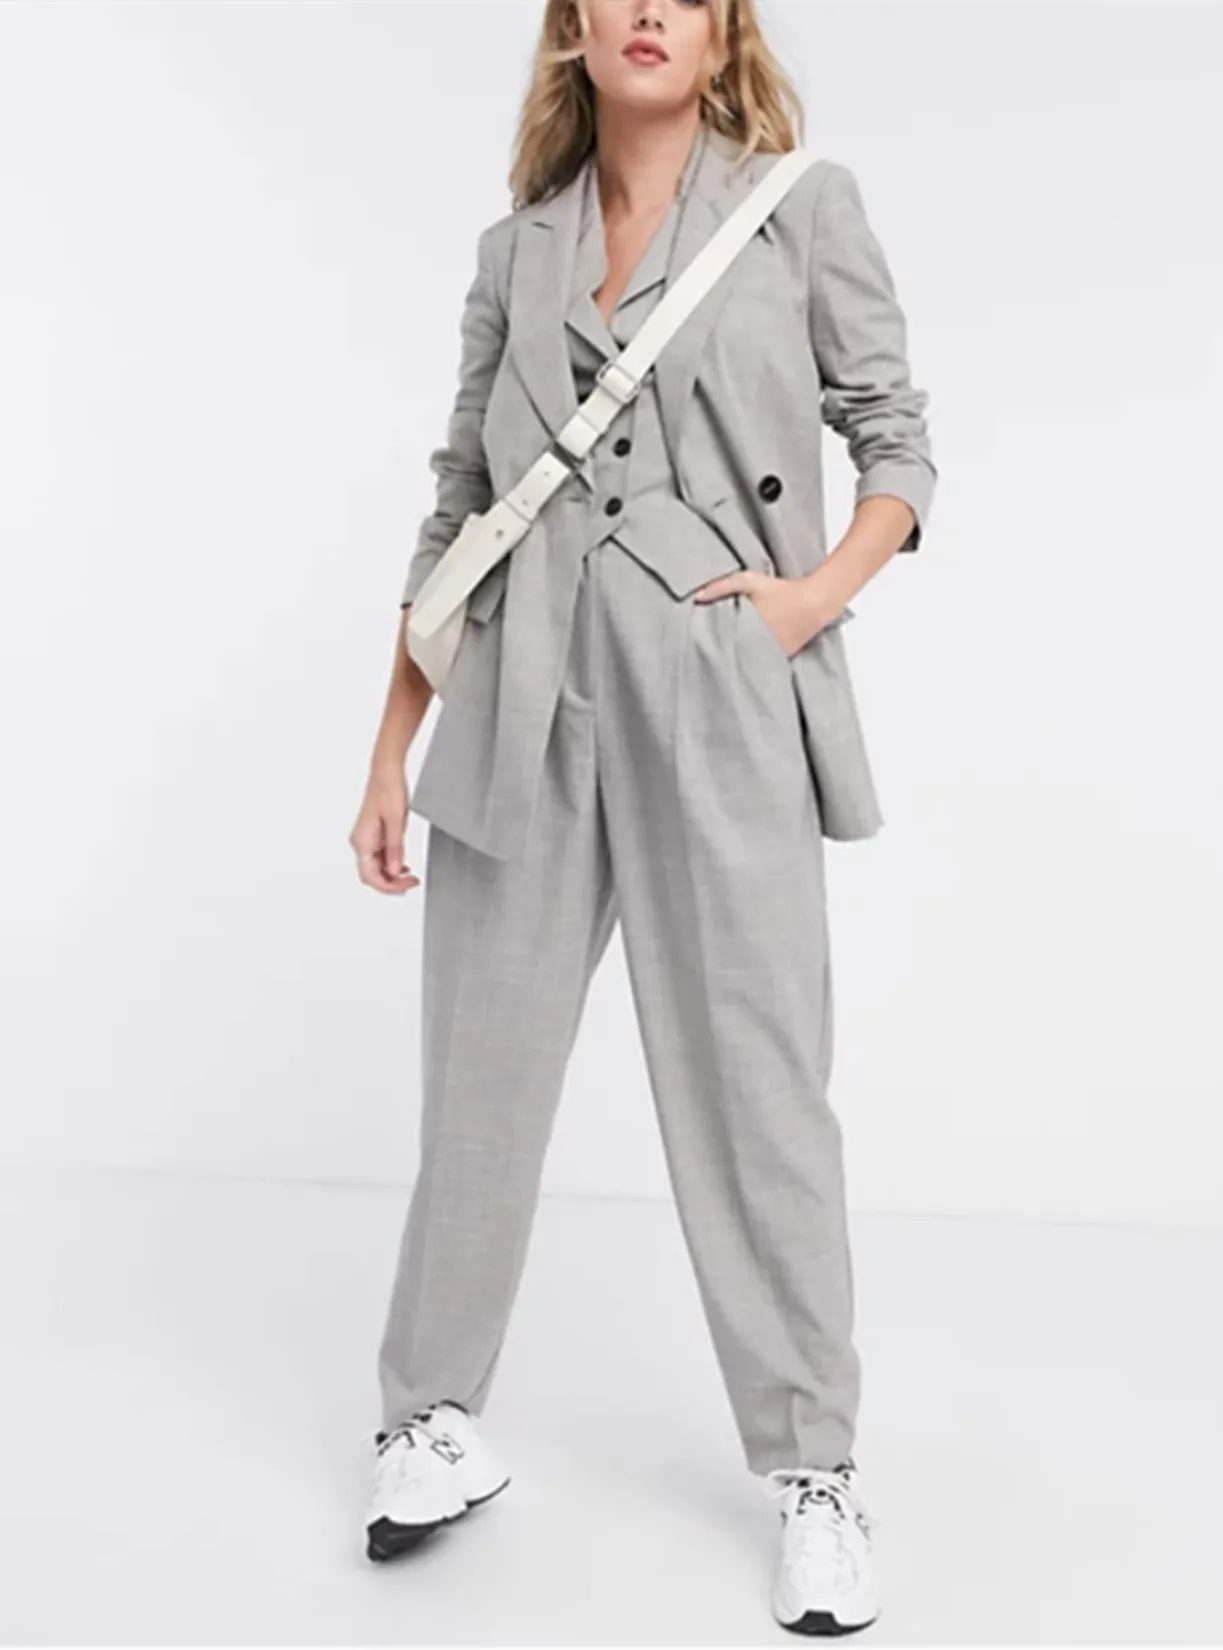 Women's Suit 3-Piece Business Office Work Wear Lapel Blazer + Trousers + Vest